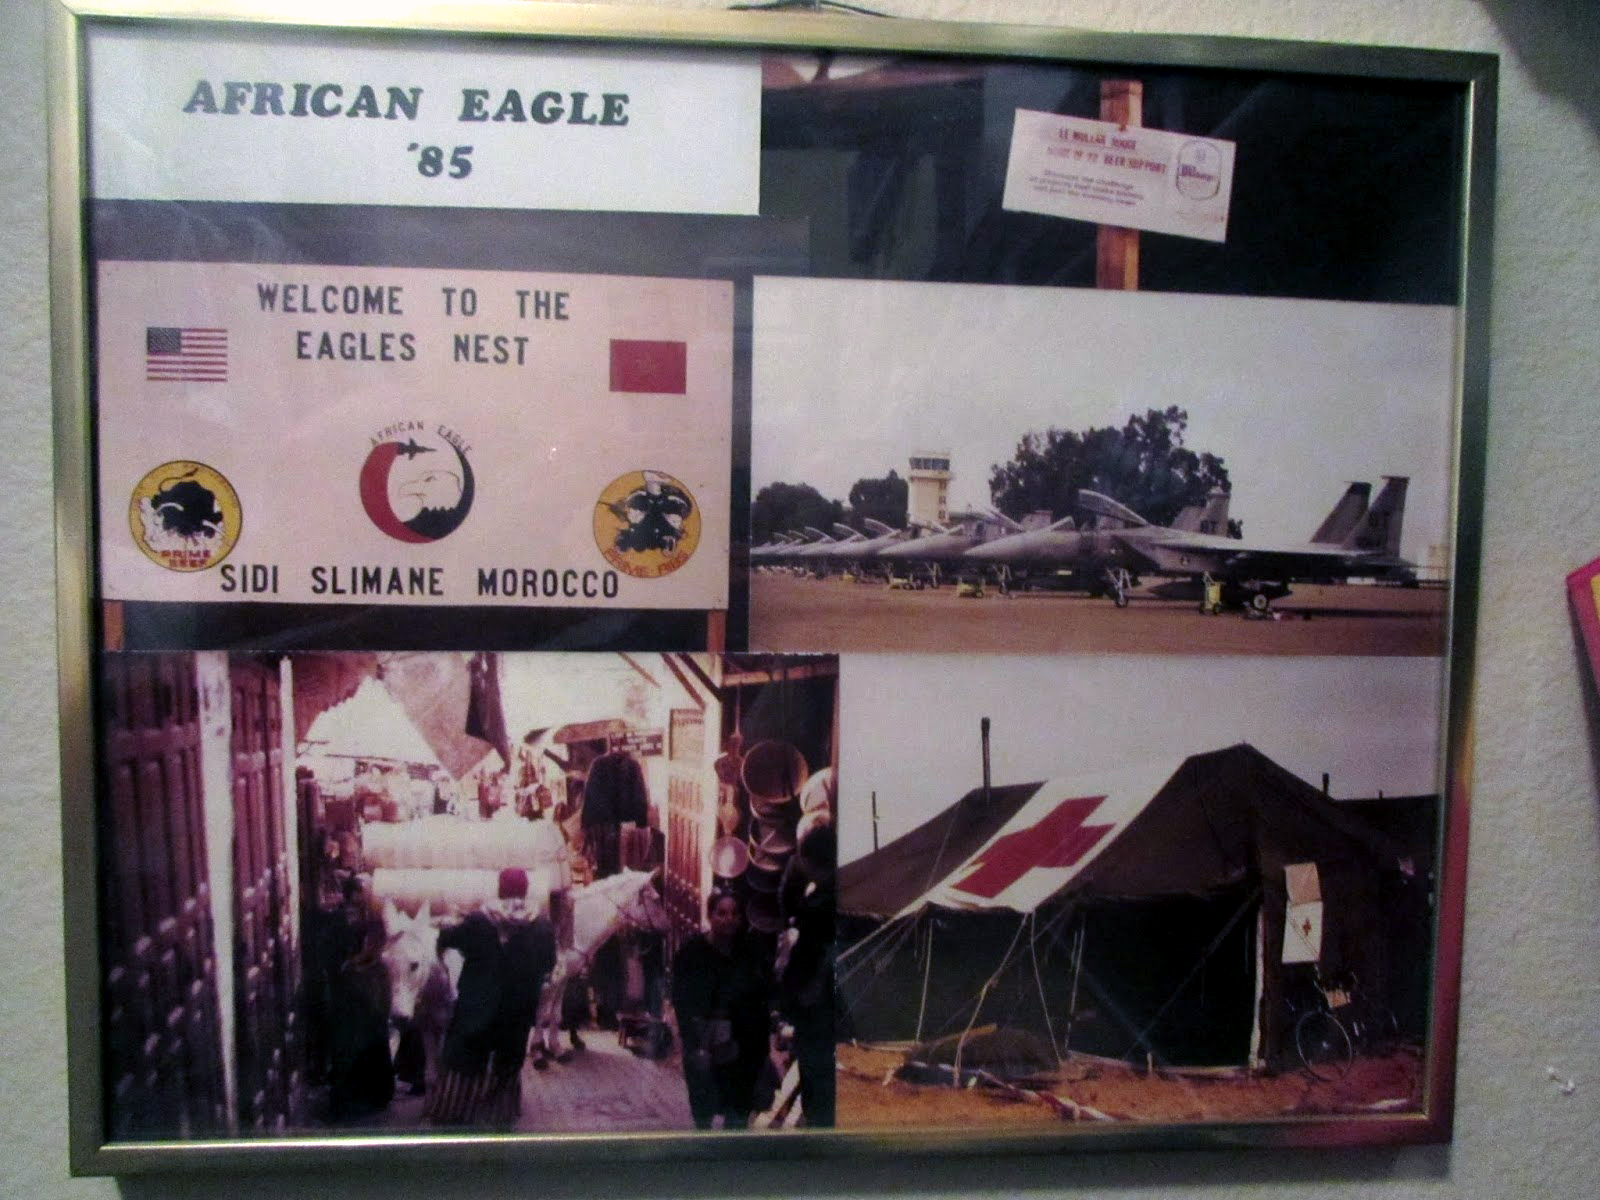  Exercice African Eagle 1985 30644597240_935533d305_o